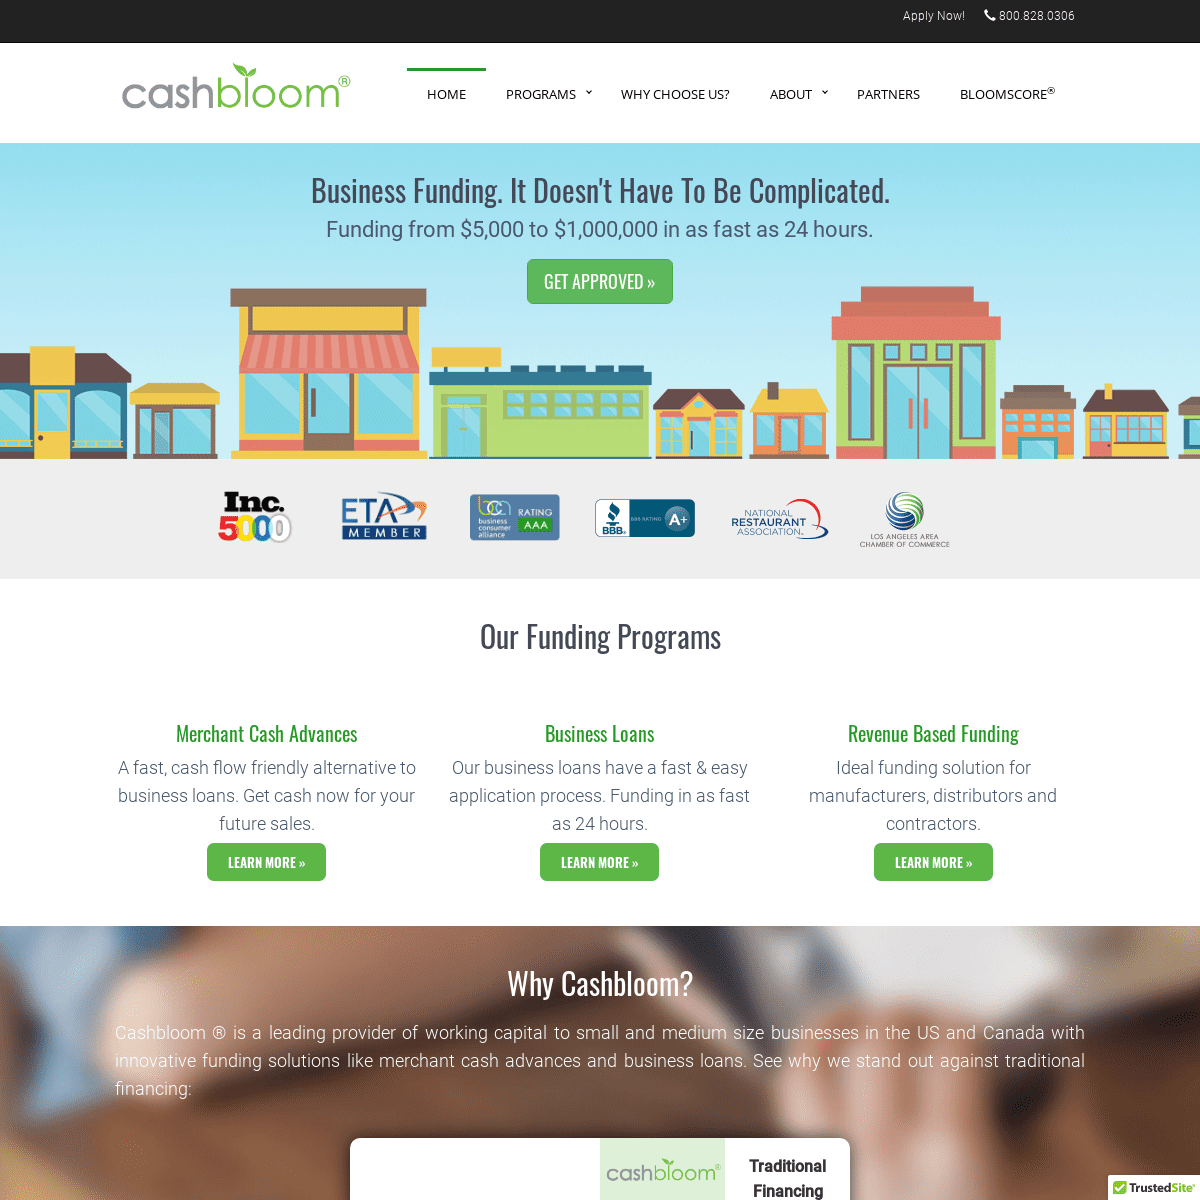 A complete backup of cashbloom.com